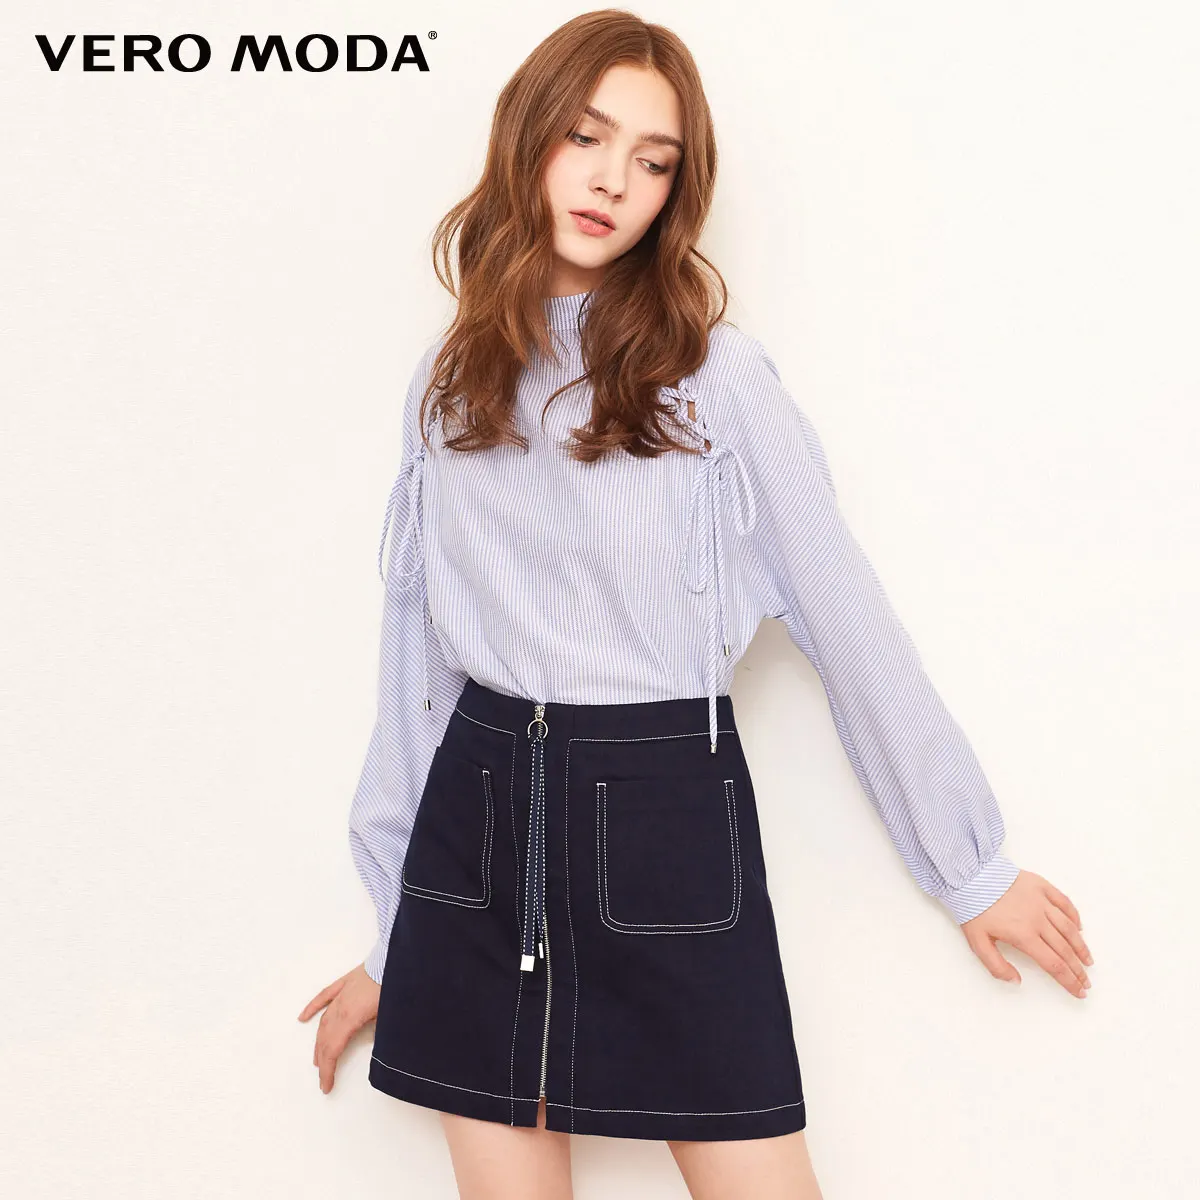 Vero Moda новые женские видимые стежки A-lined мини джинсовая юбка | 318337513 - Цвет: Indigo blue denim